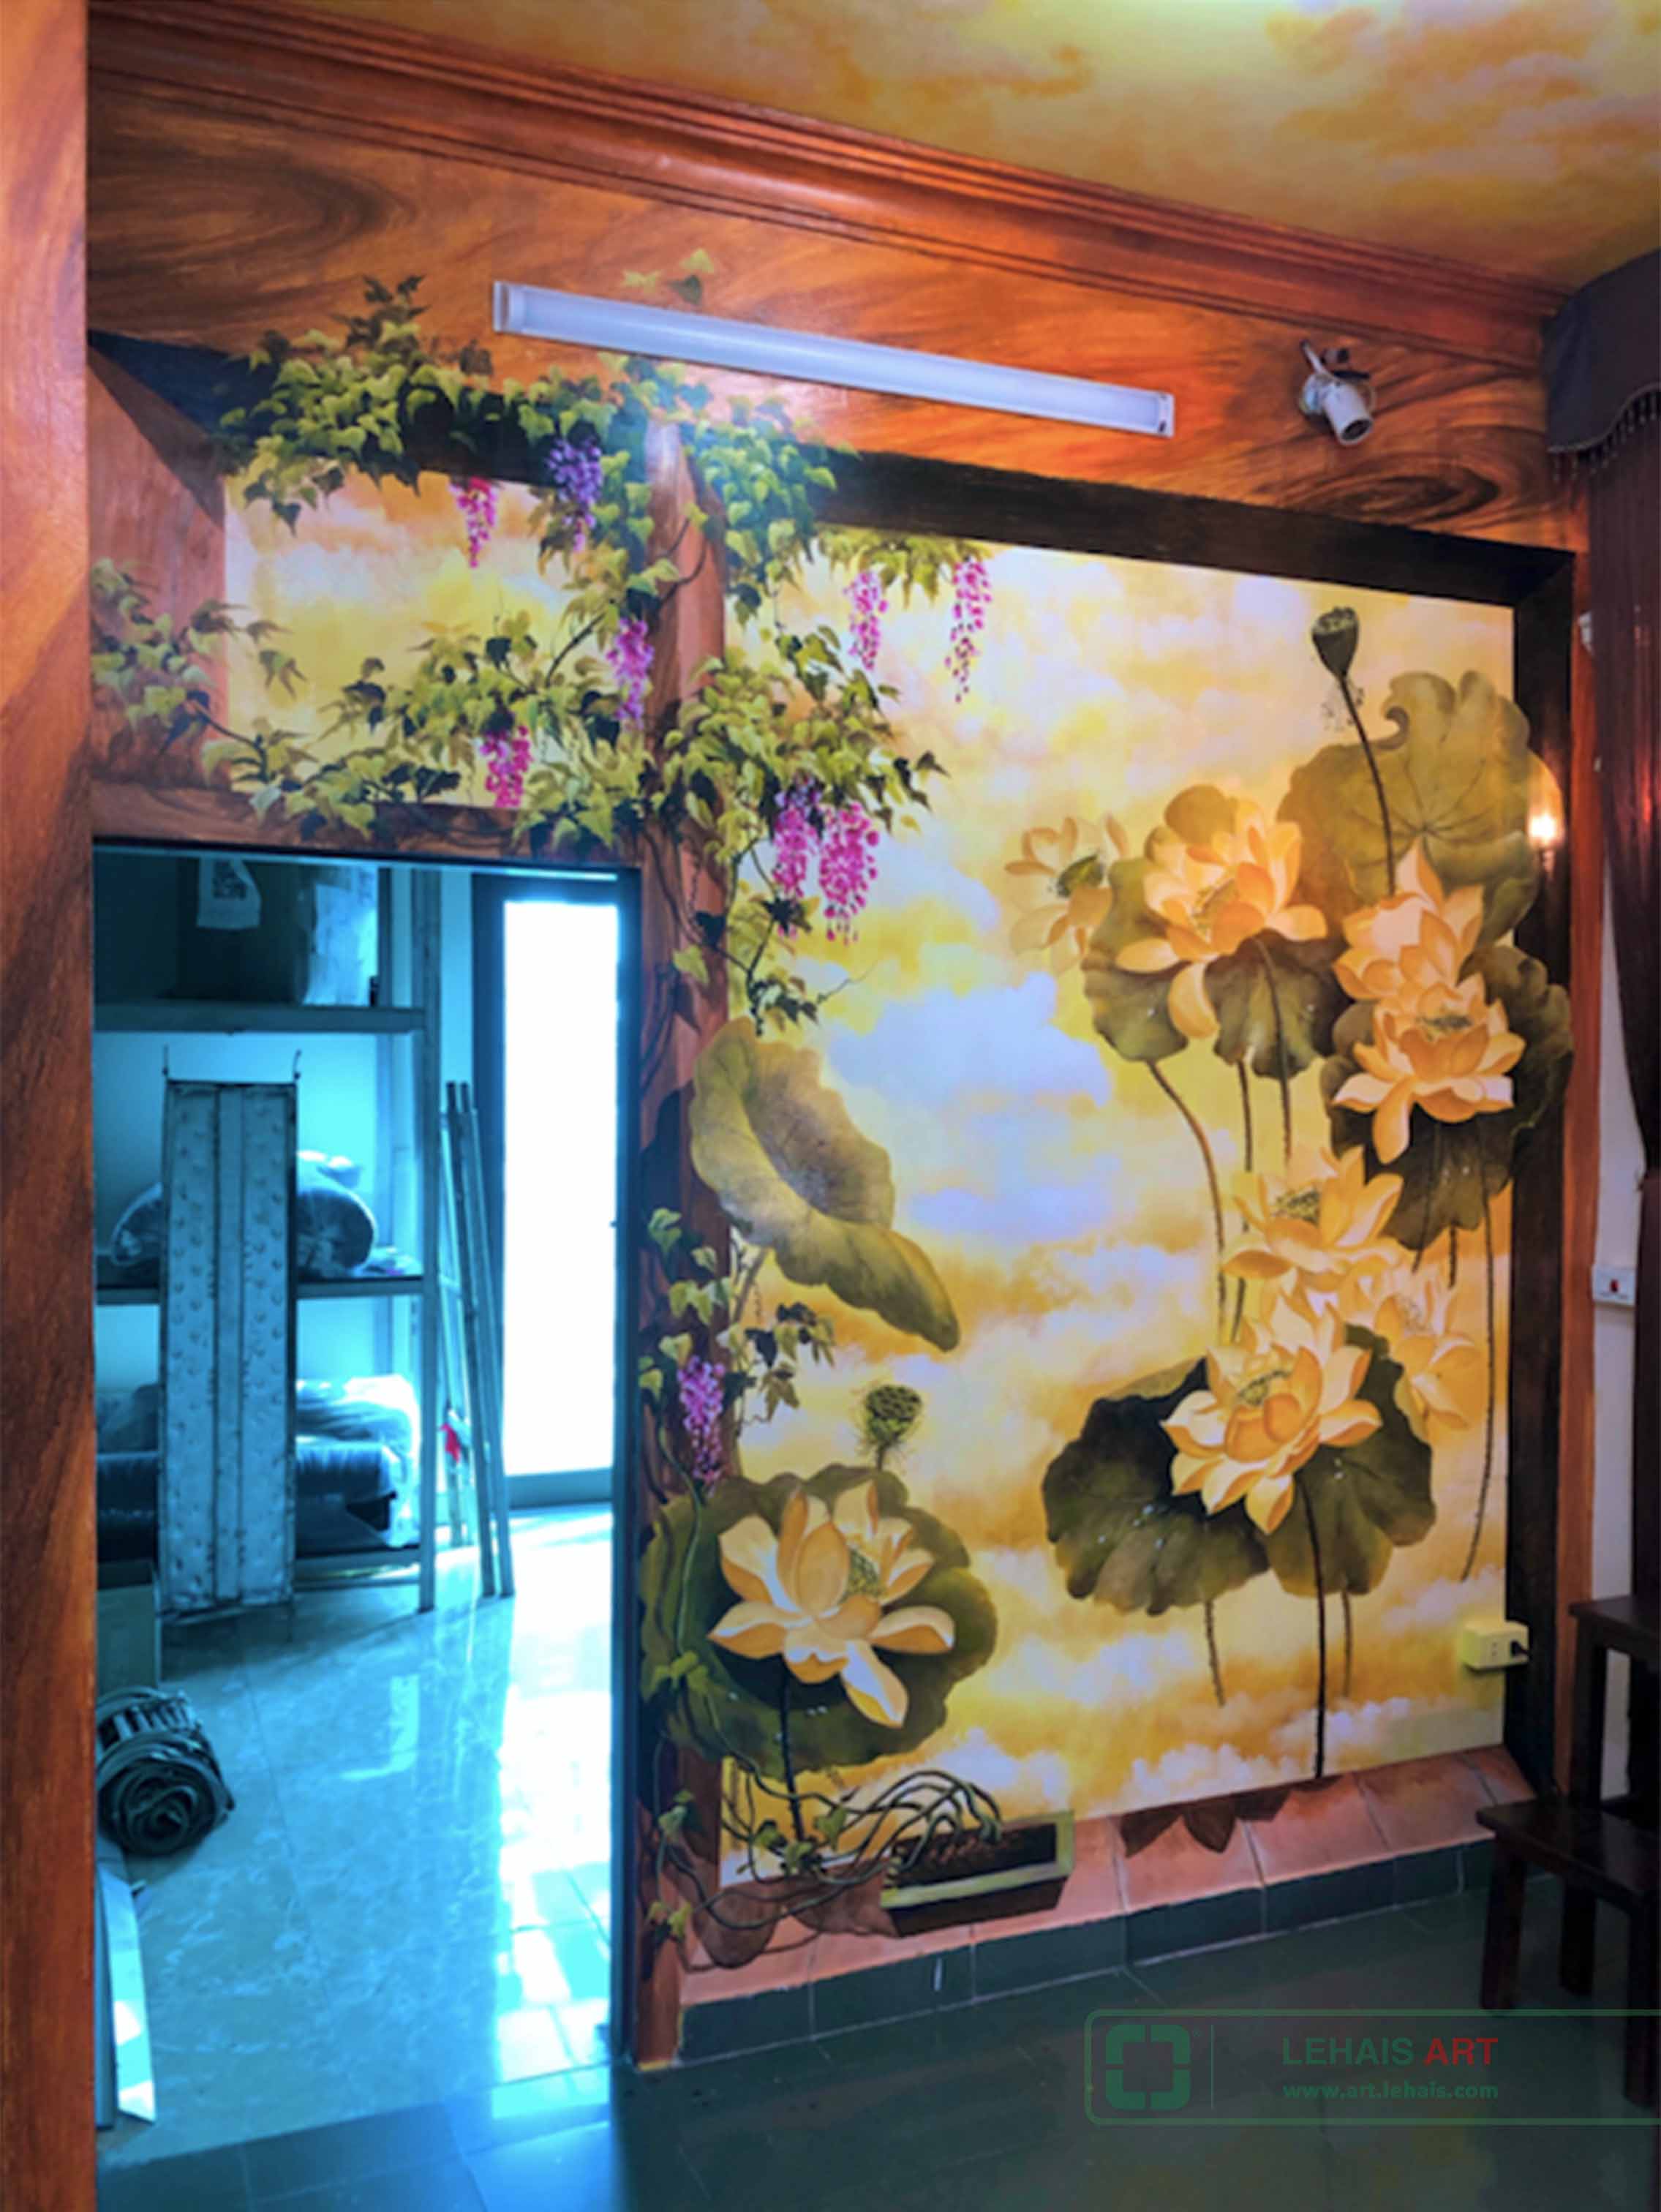 Vẽ tranh hoa sen 3D tại phòng thờ gia đình ở phố Đường Thành, quận Hoàn Kiếm, Hà Nội - TT194LHAR 2